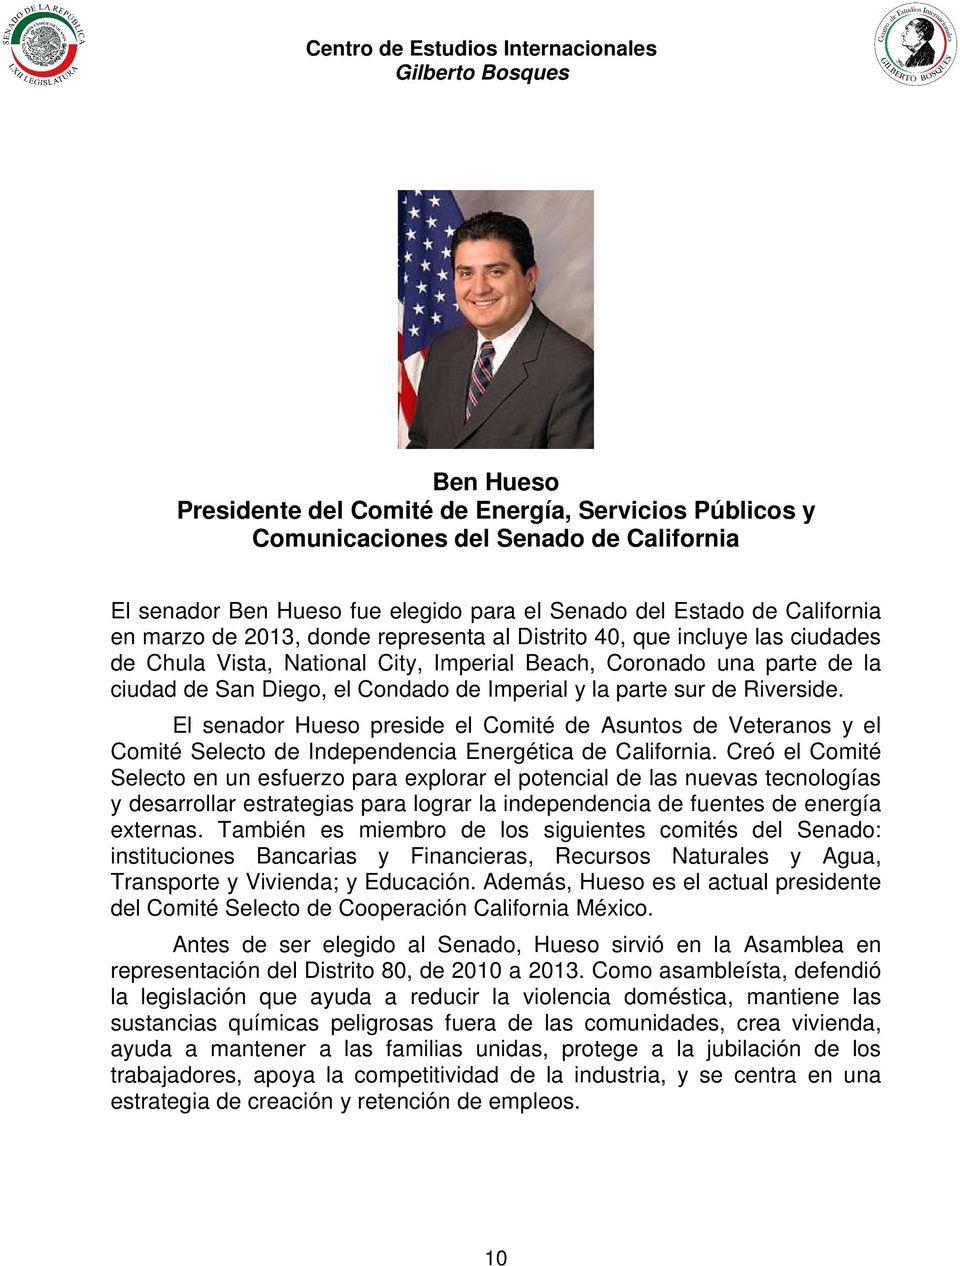 Riverside. El senador Hueso preside el Comité de Asuntos de Veteranos y el Comité Selecto de Independencia Energética de California.